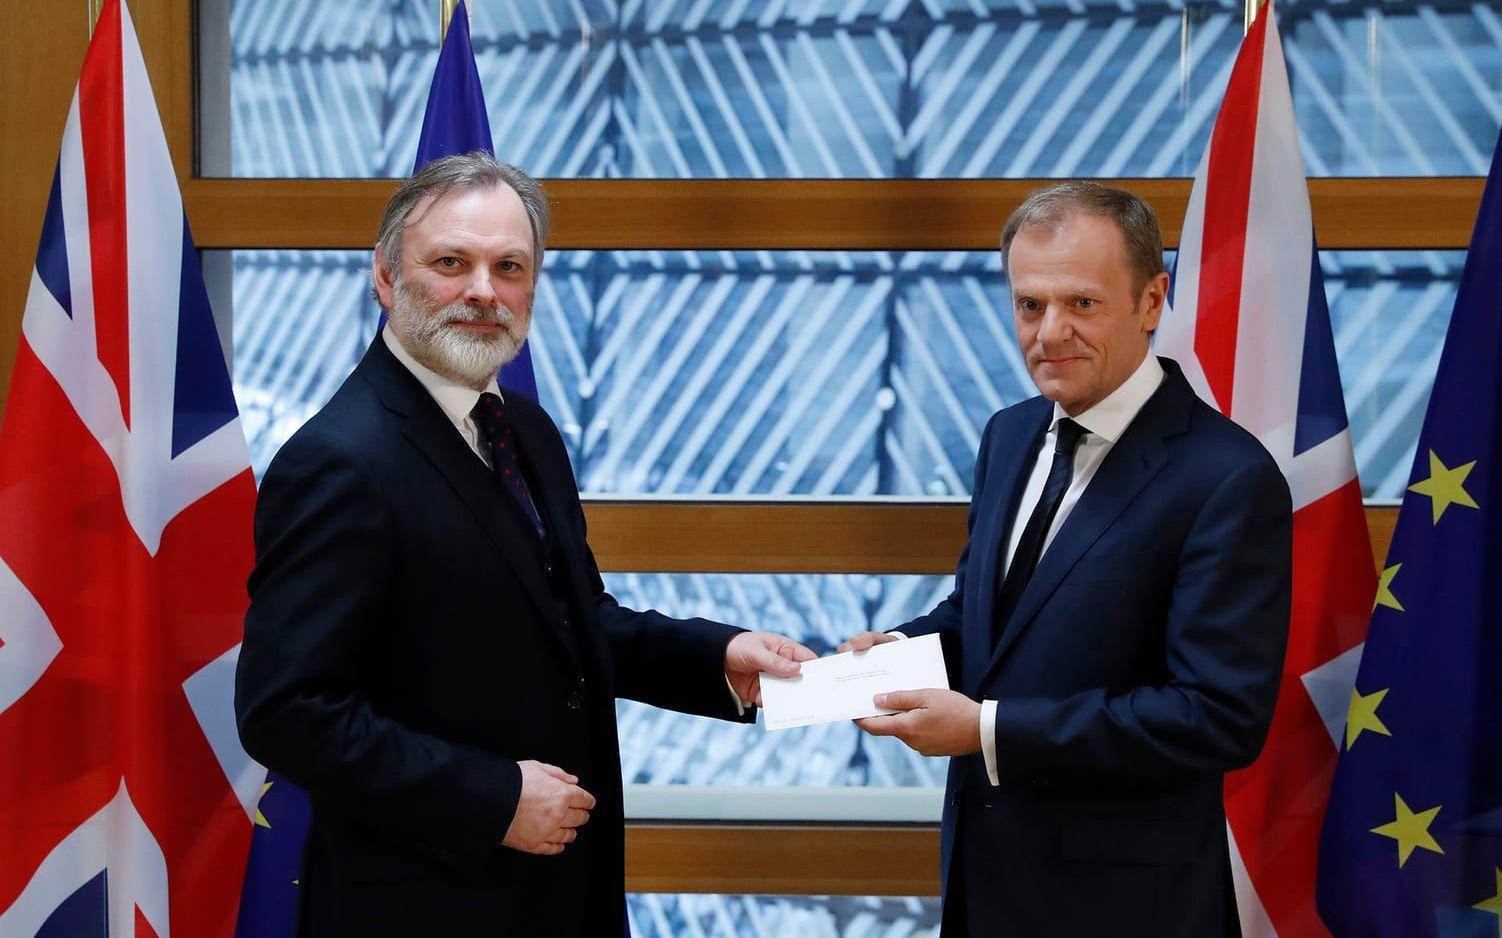 EU-presidenten Donald Tusk mottar den brittiska premiärministern Theresa Mays formella begäran om utträde ur EU av Storbritanniens permanente EU-representant i Bryssel, Tim Barrow.  FOTO: Emmanuel Dunand/AP